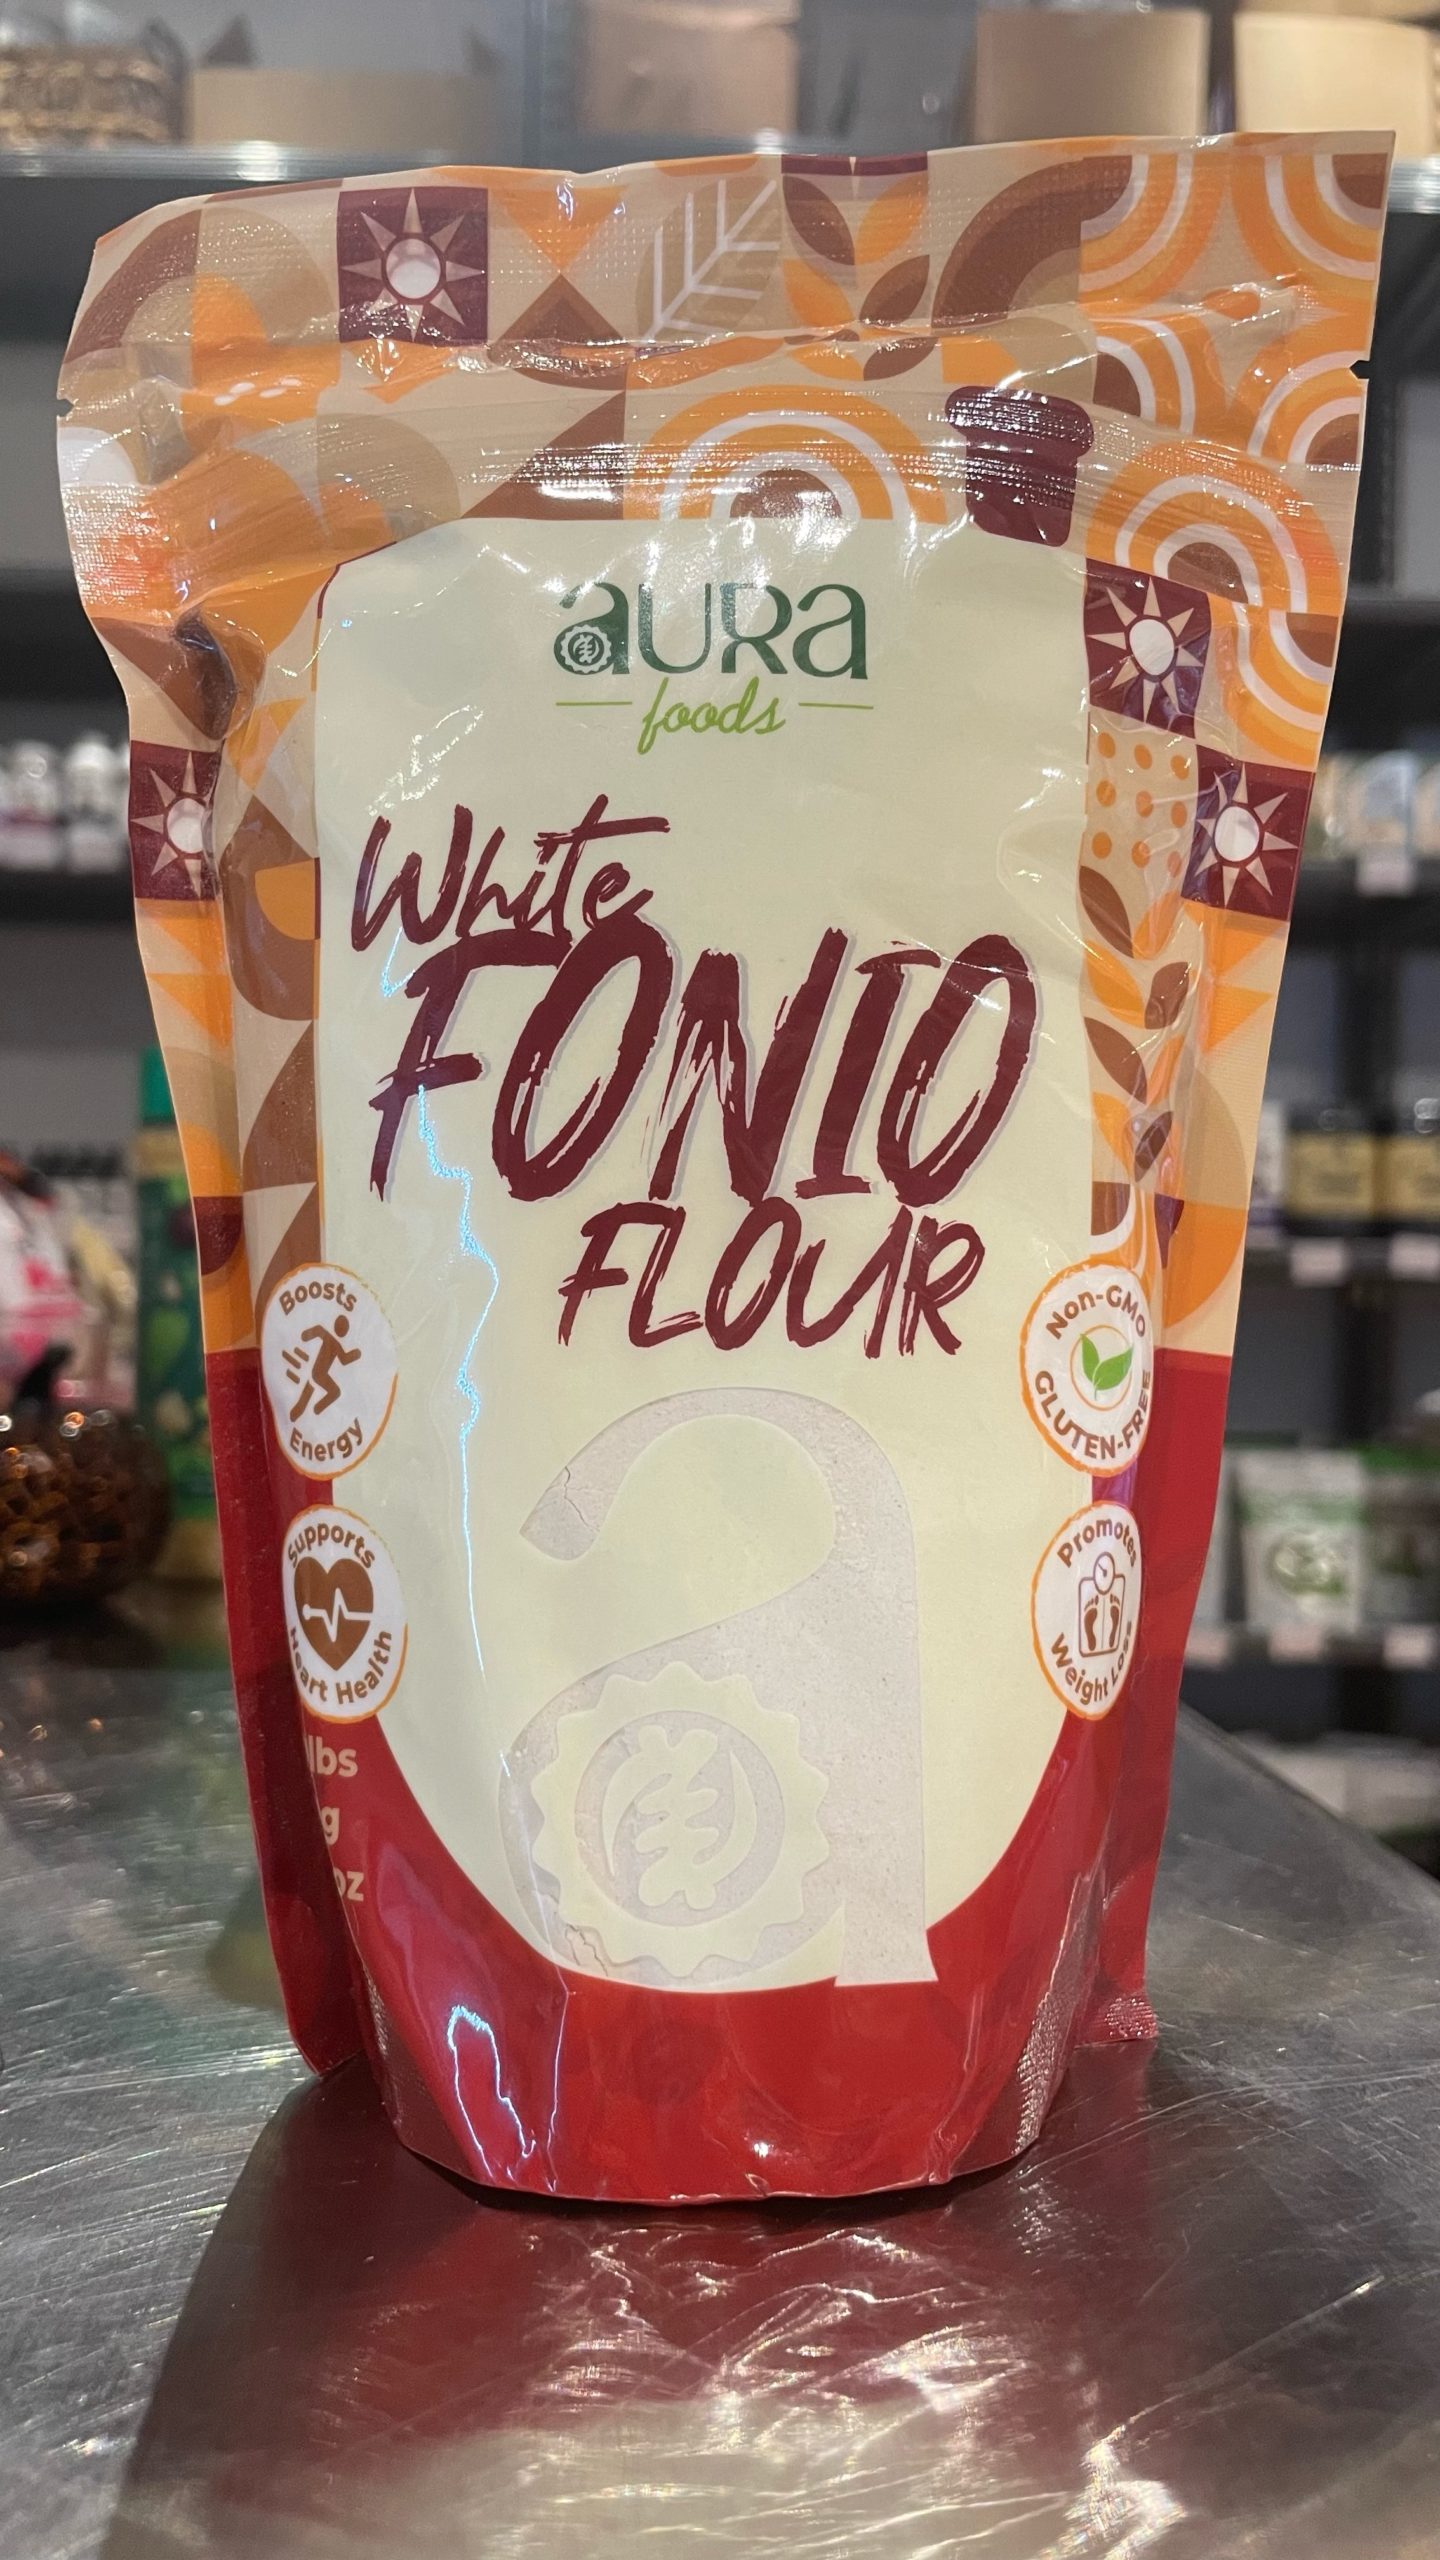 White Finio Flour